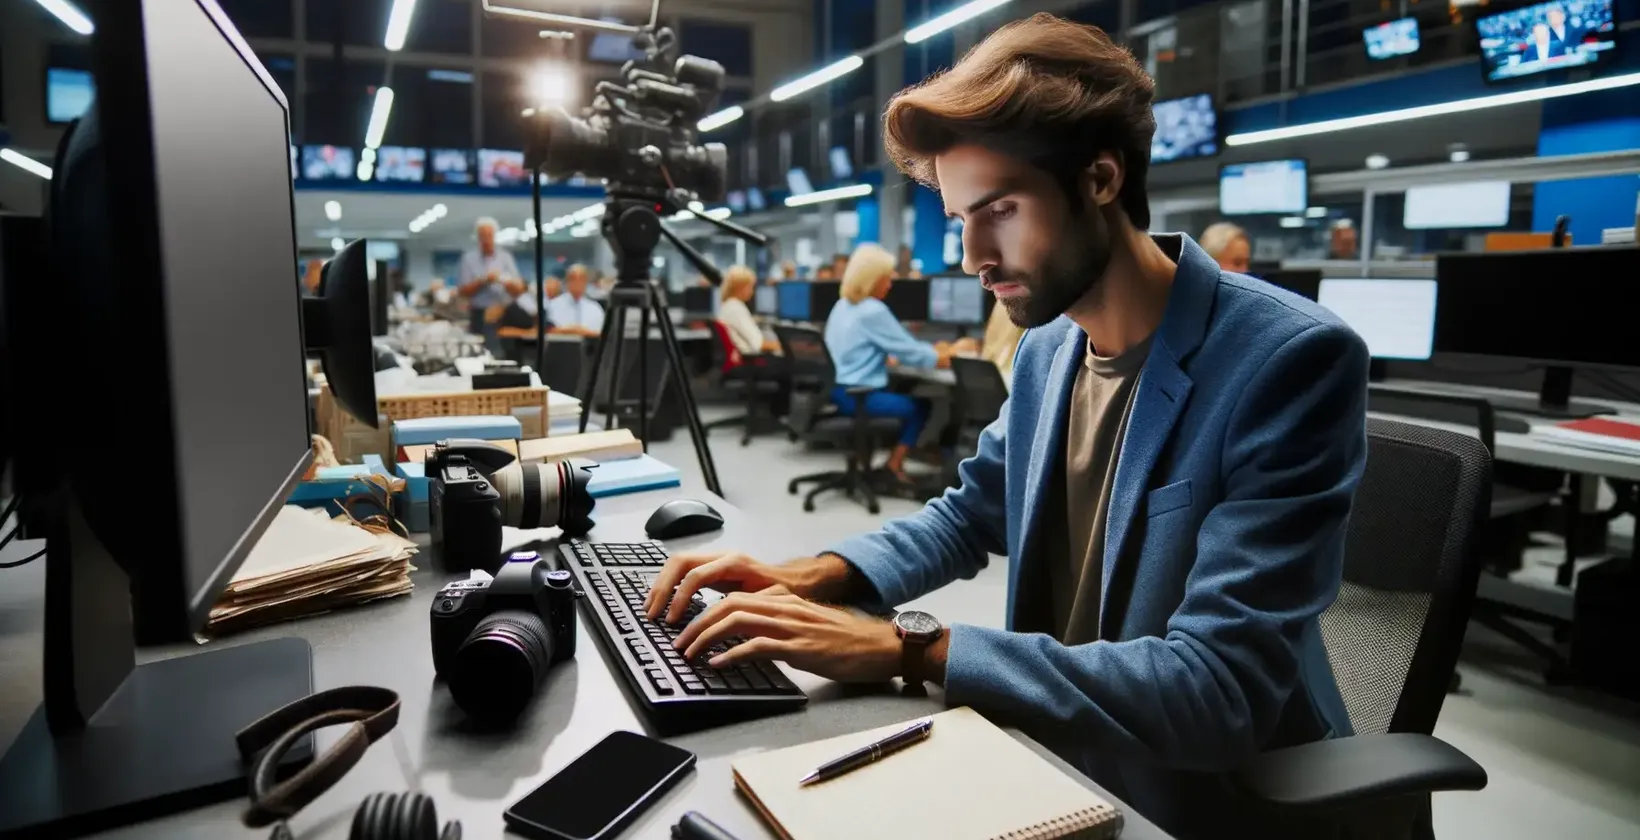 صحفي في غرفة أخبار مزدحمة باستخدام برامج النسخ على جهاز الكمبيوتر الخاص به.
